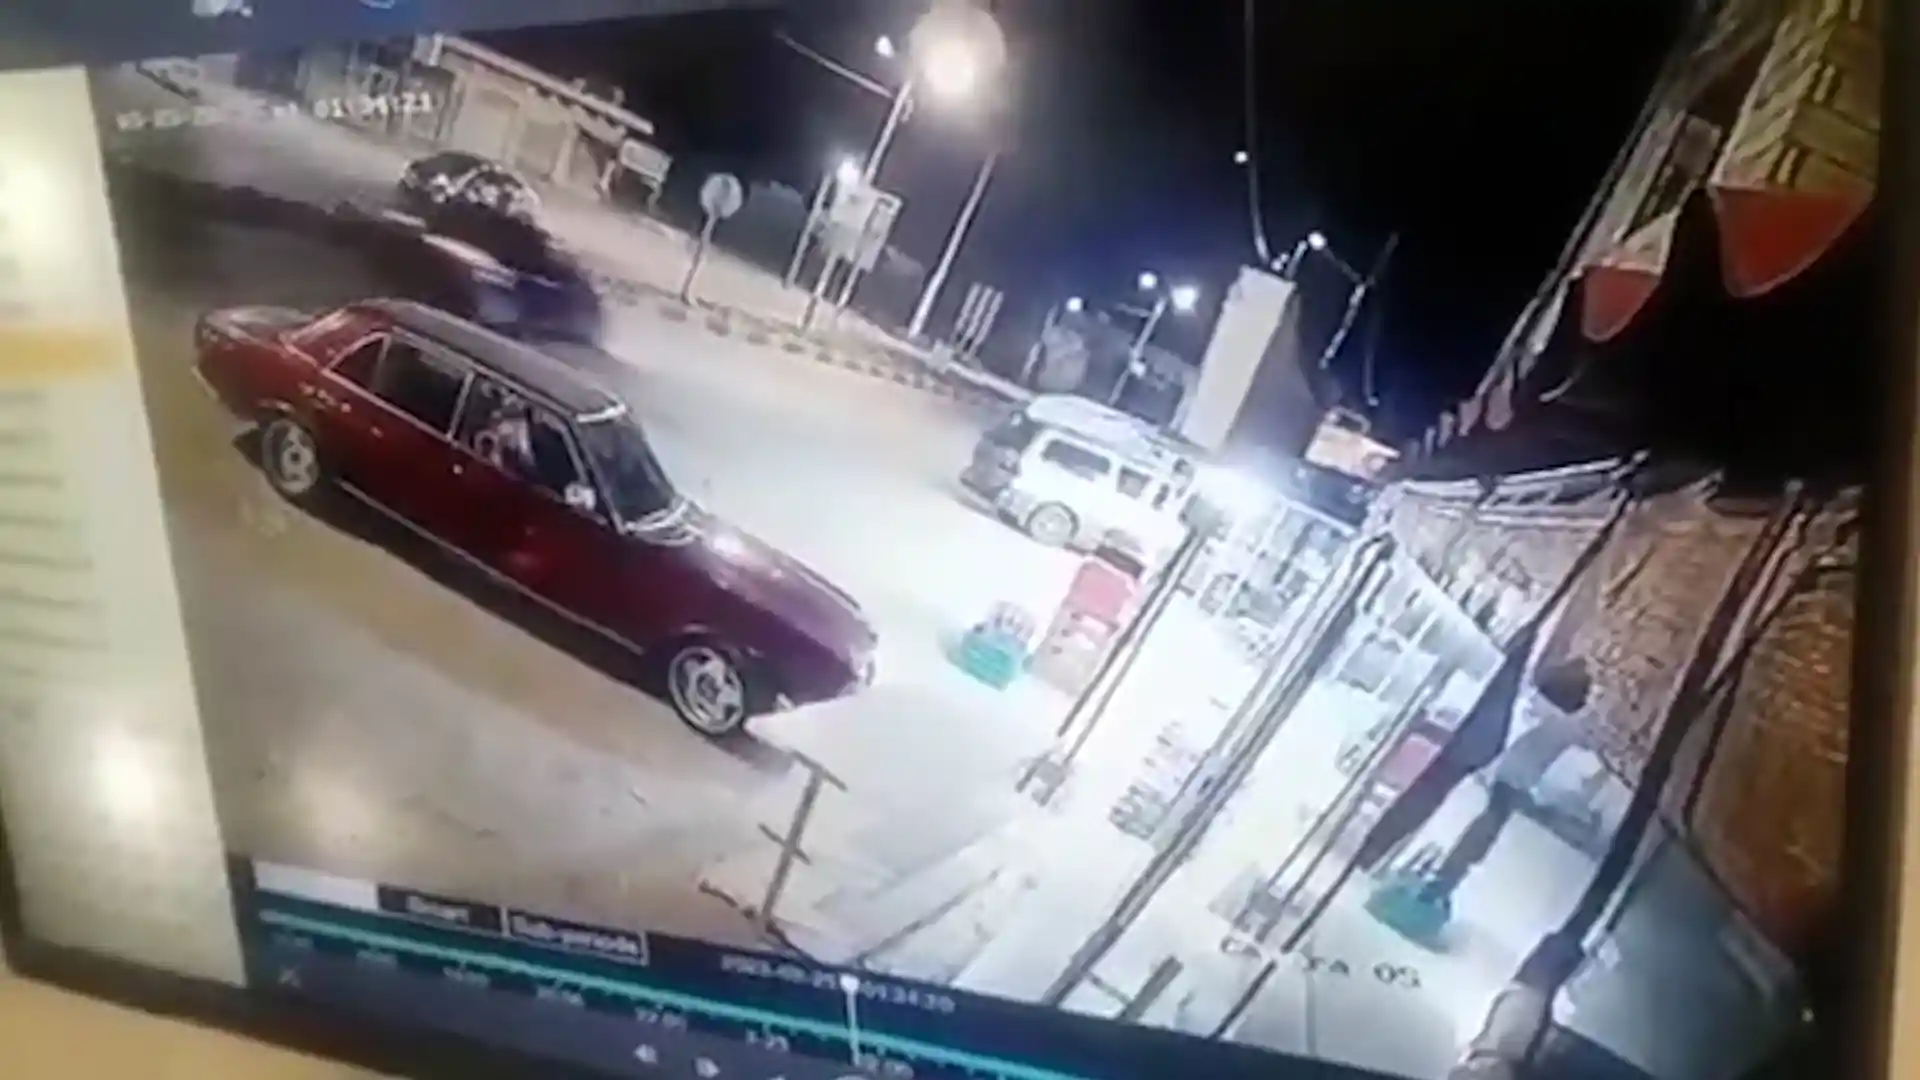 "طَخو في الشارع".. مواطن يطلق النار على آخر ويصيبه (فيديو مروع)